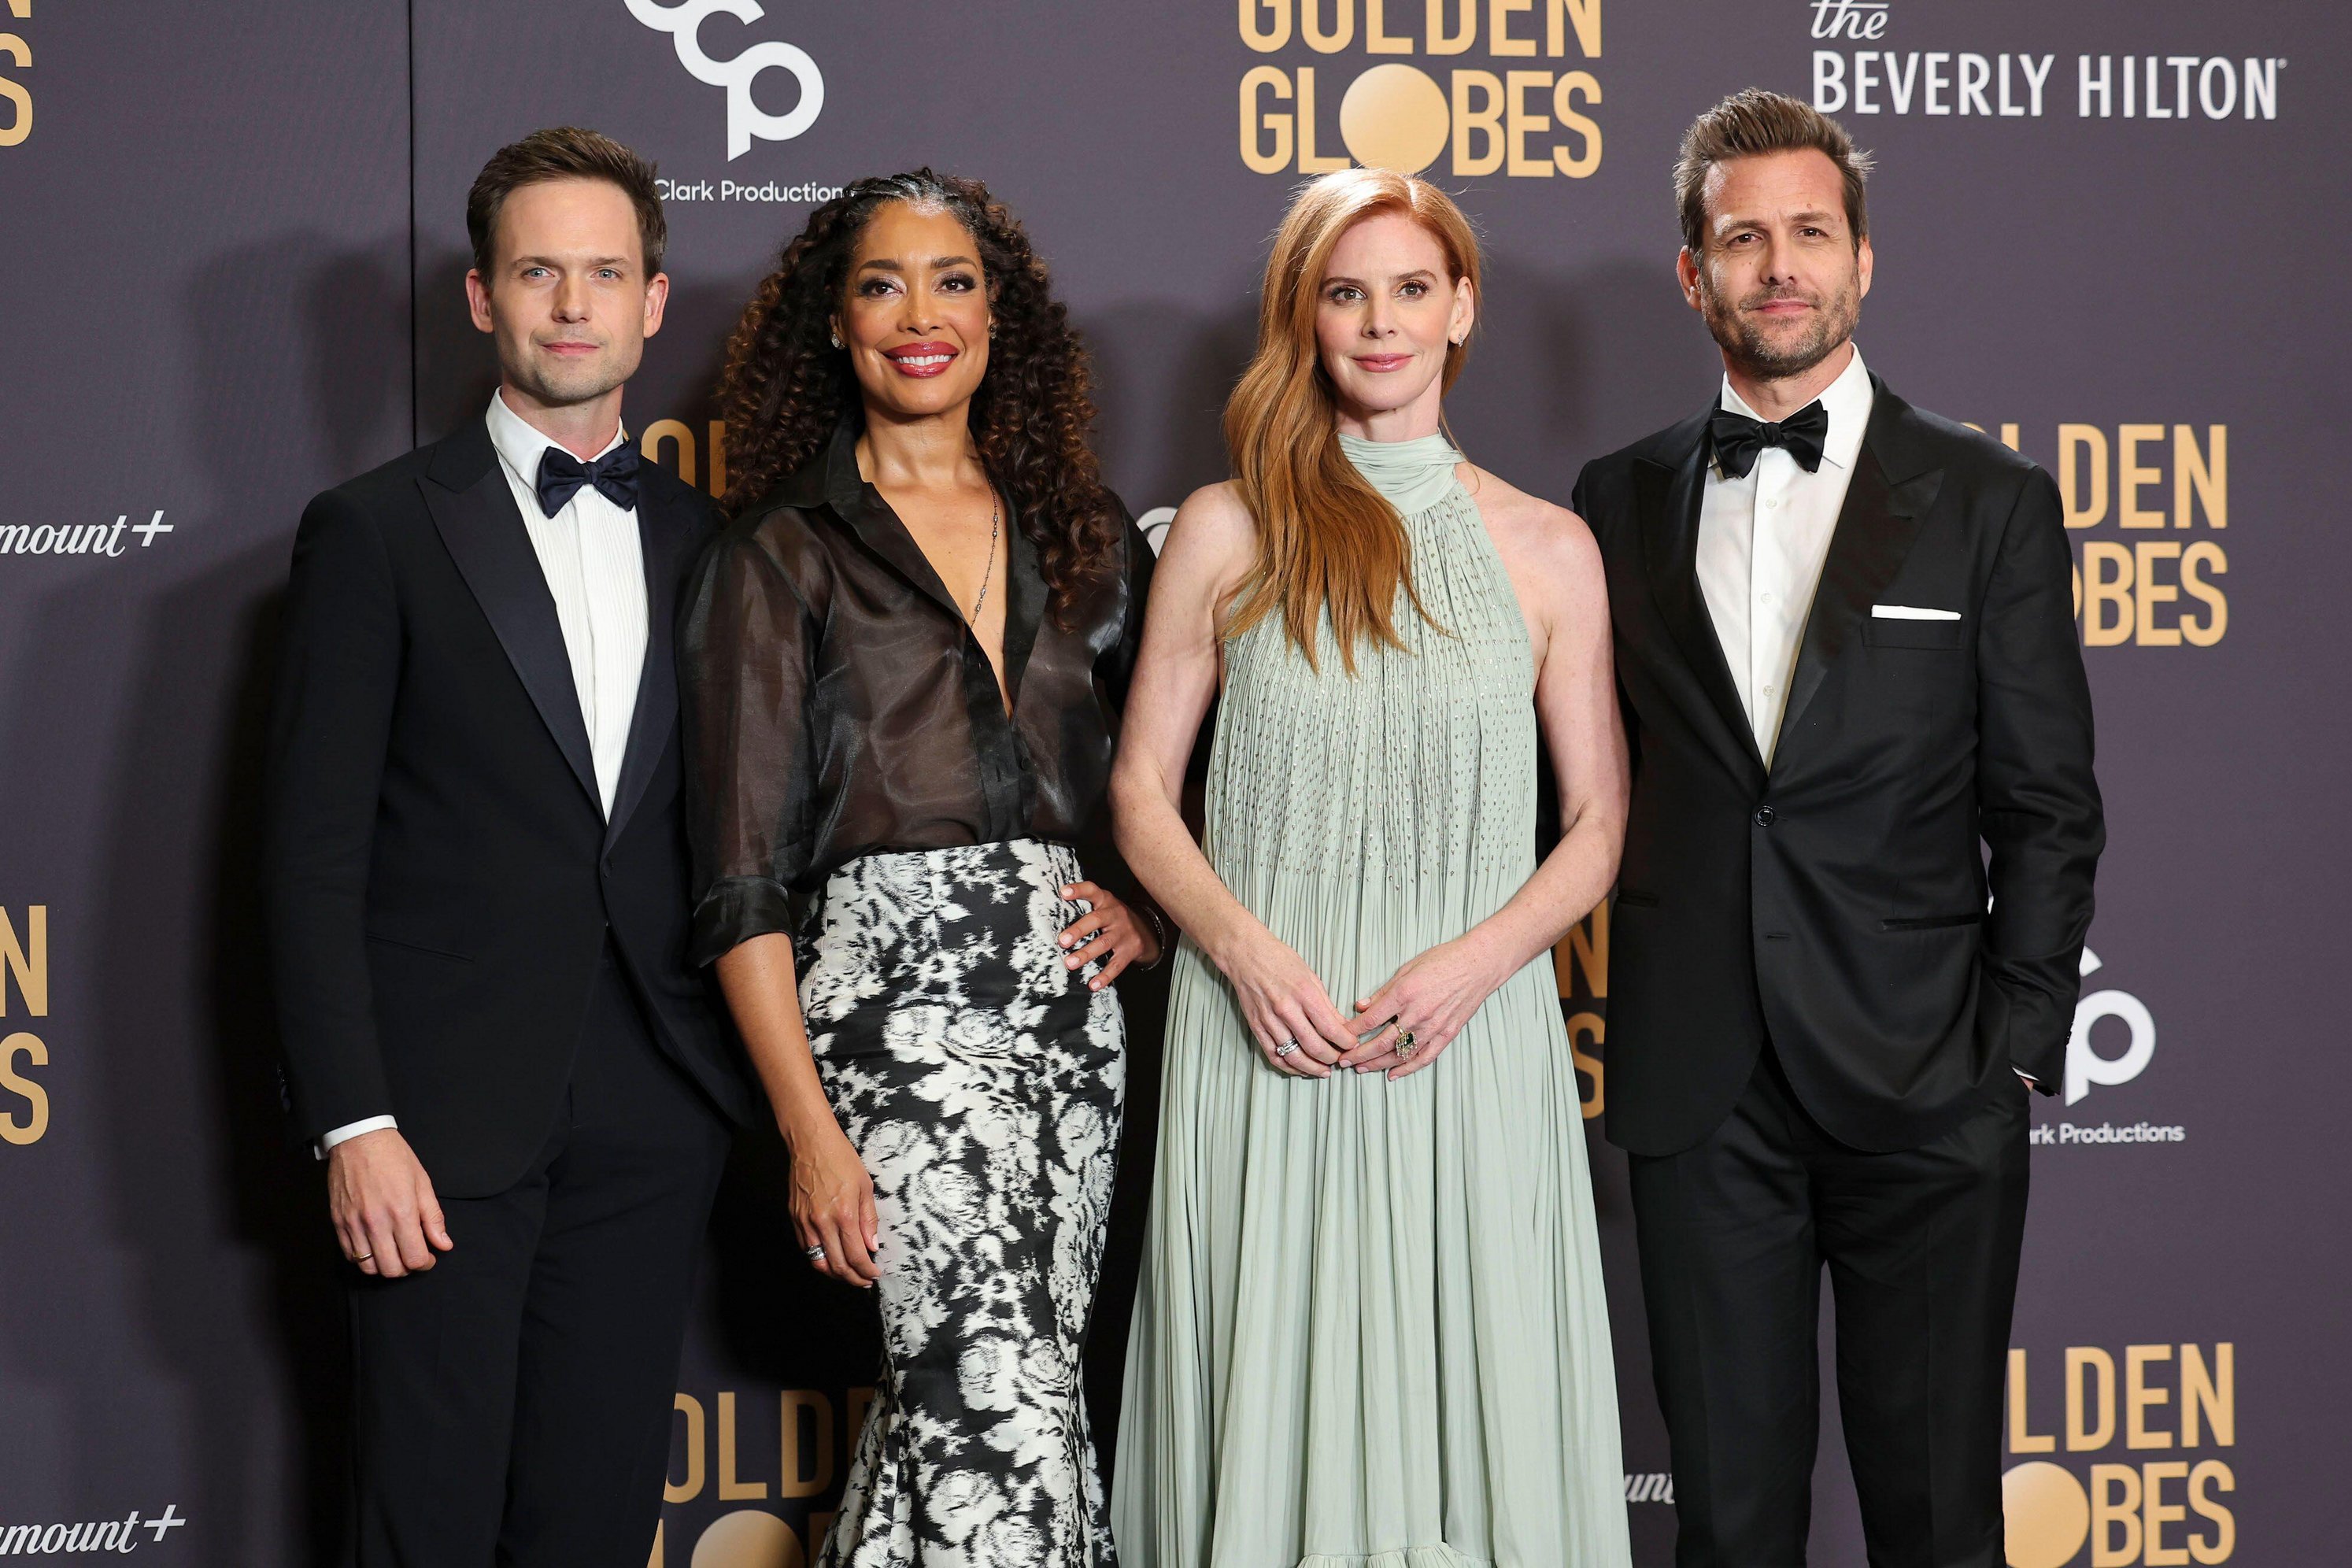 Le casting de Suits - dont Patrick J. Adams, Gina Torres, Sarah Rafferty et Gabriel Macht - s'est réuni hier soir aux Golden Globes.